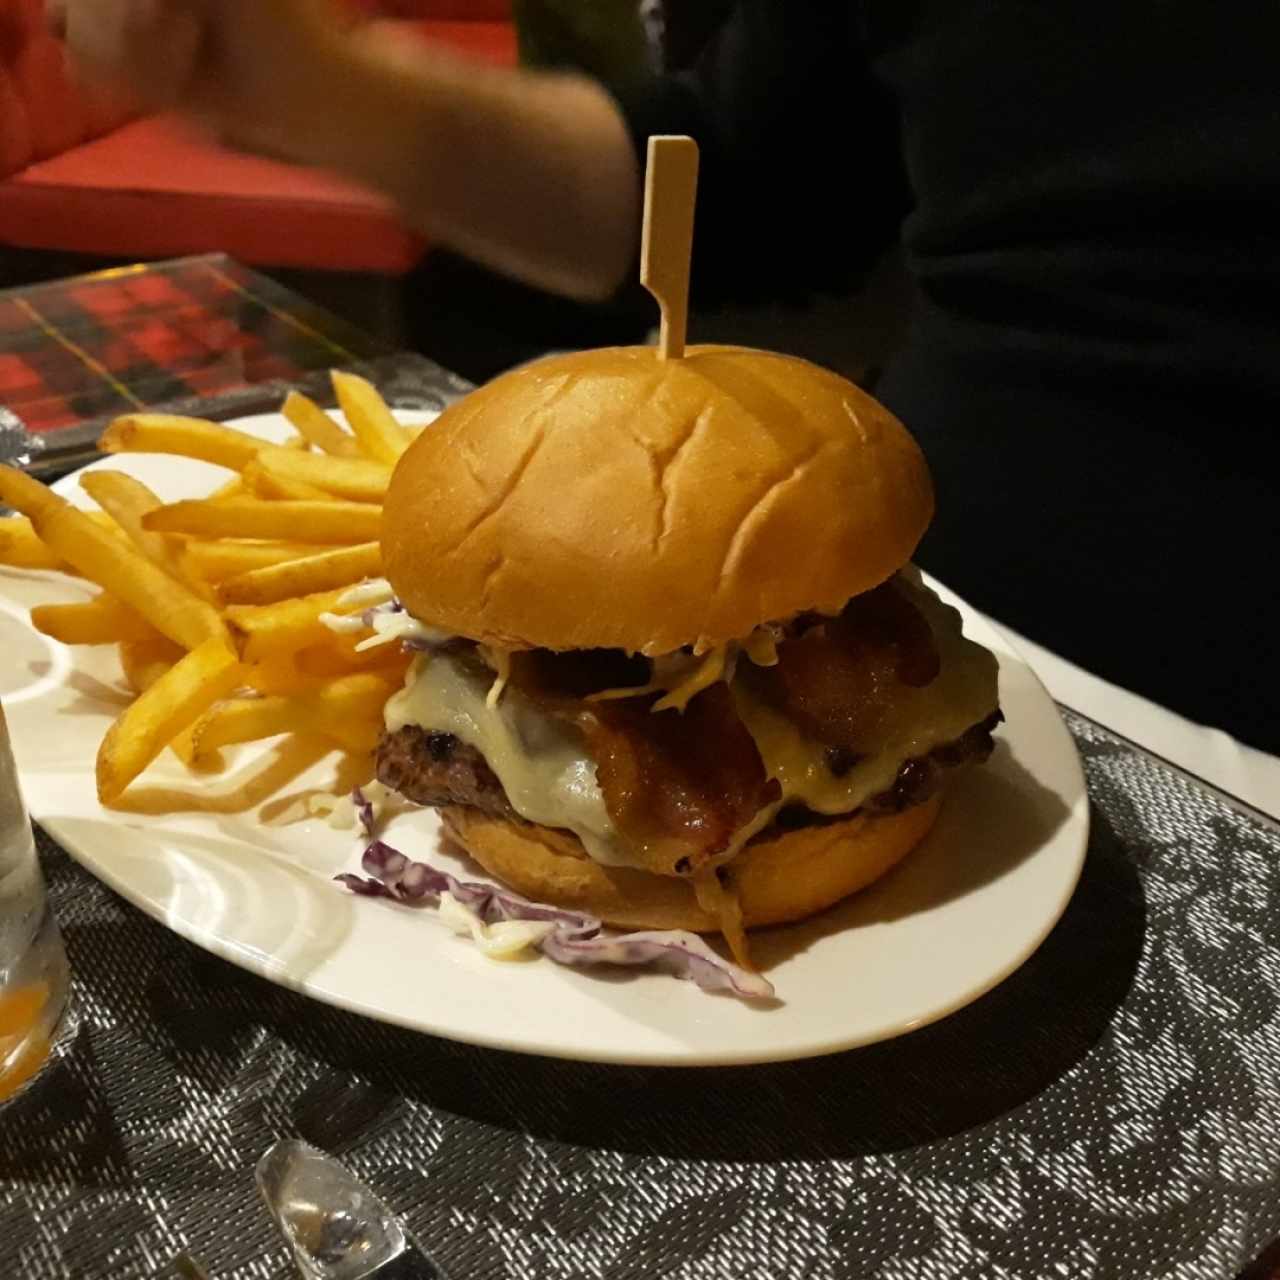 Hamburguesas - The Wallace burger